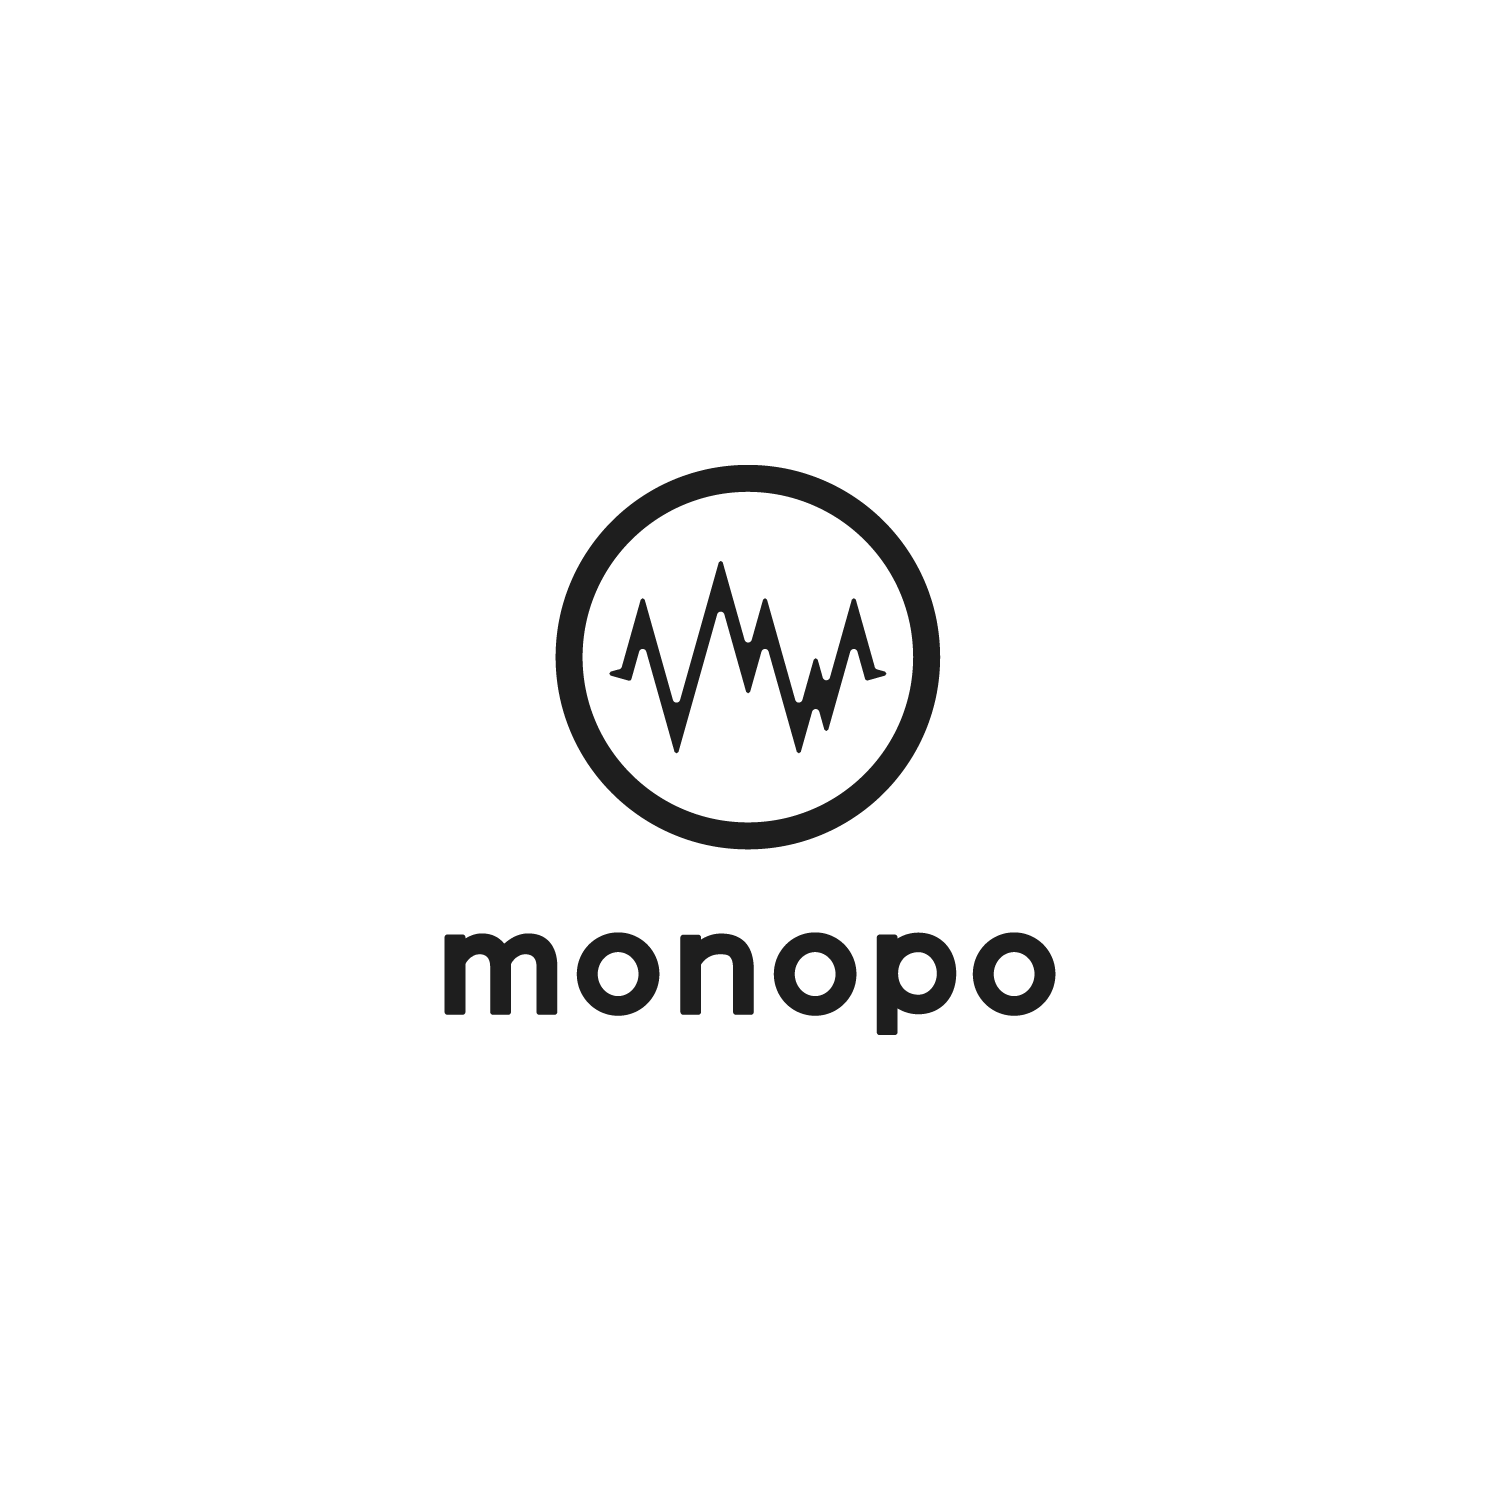 monopo